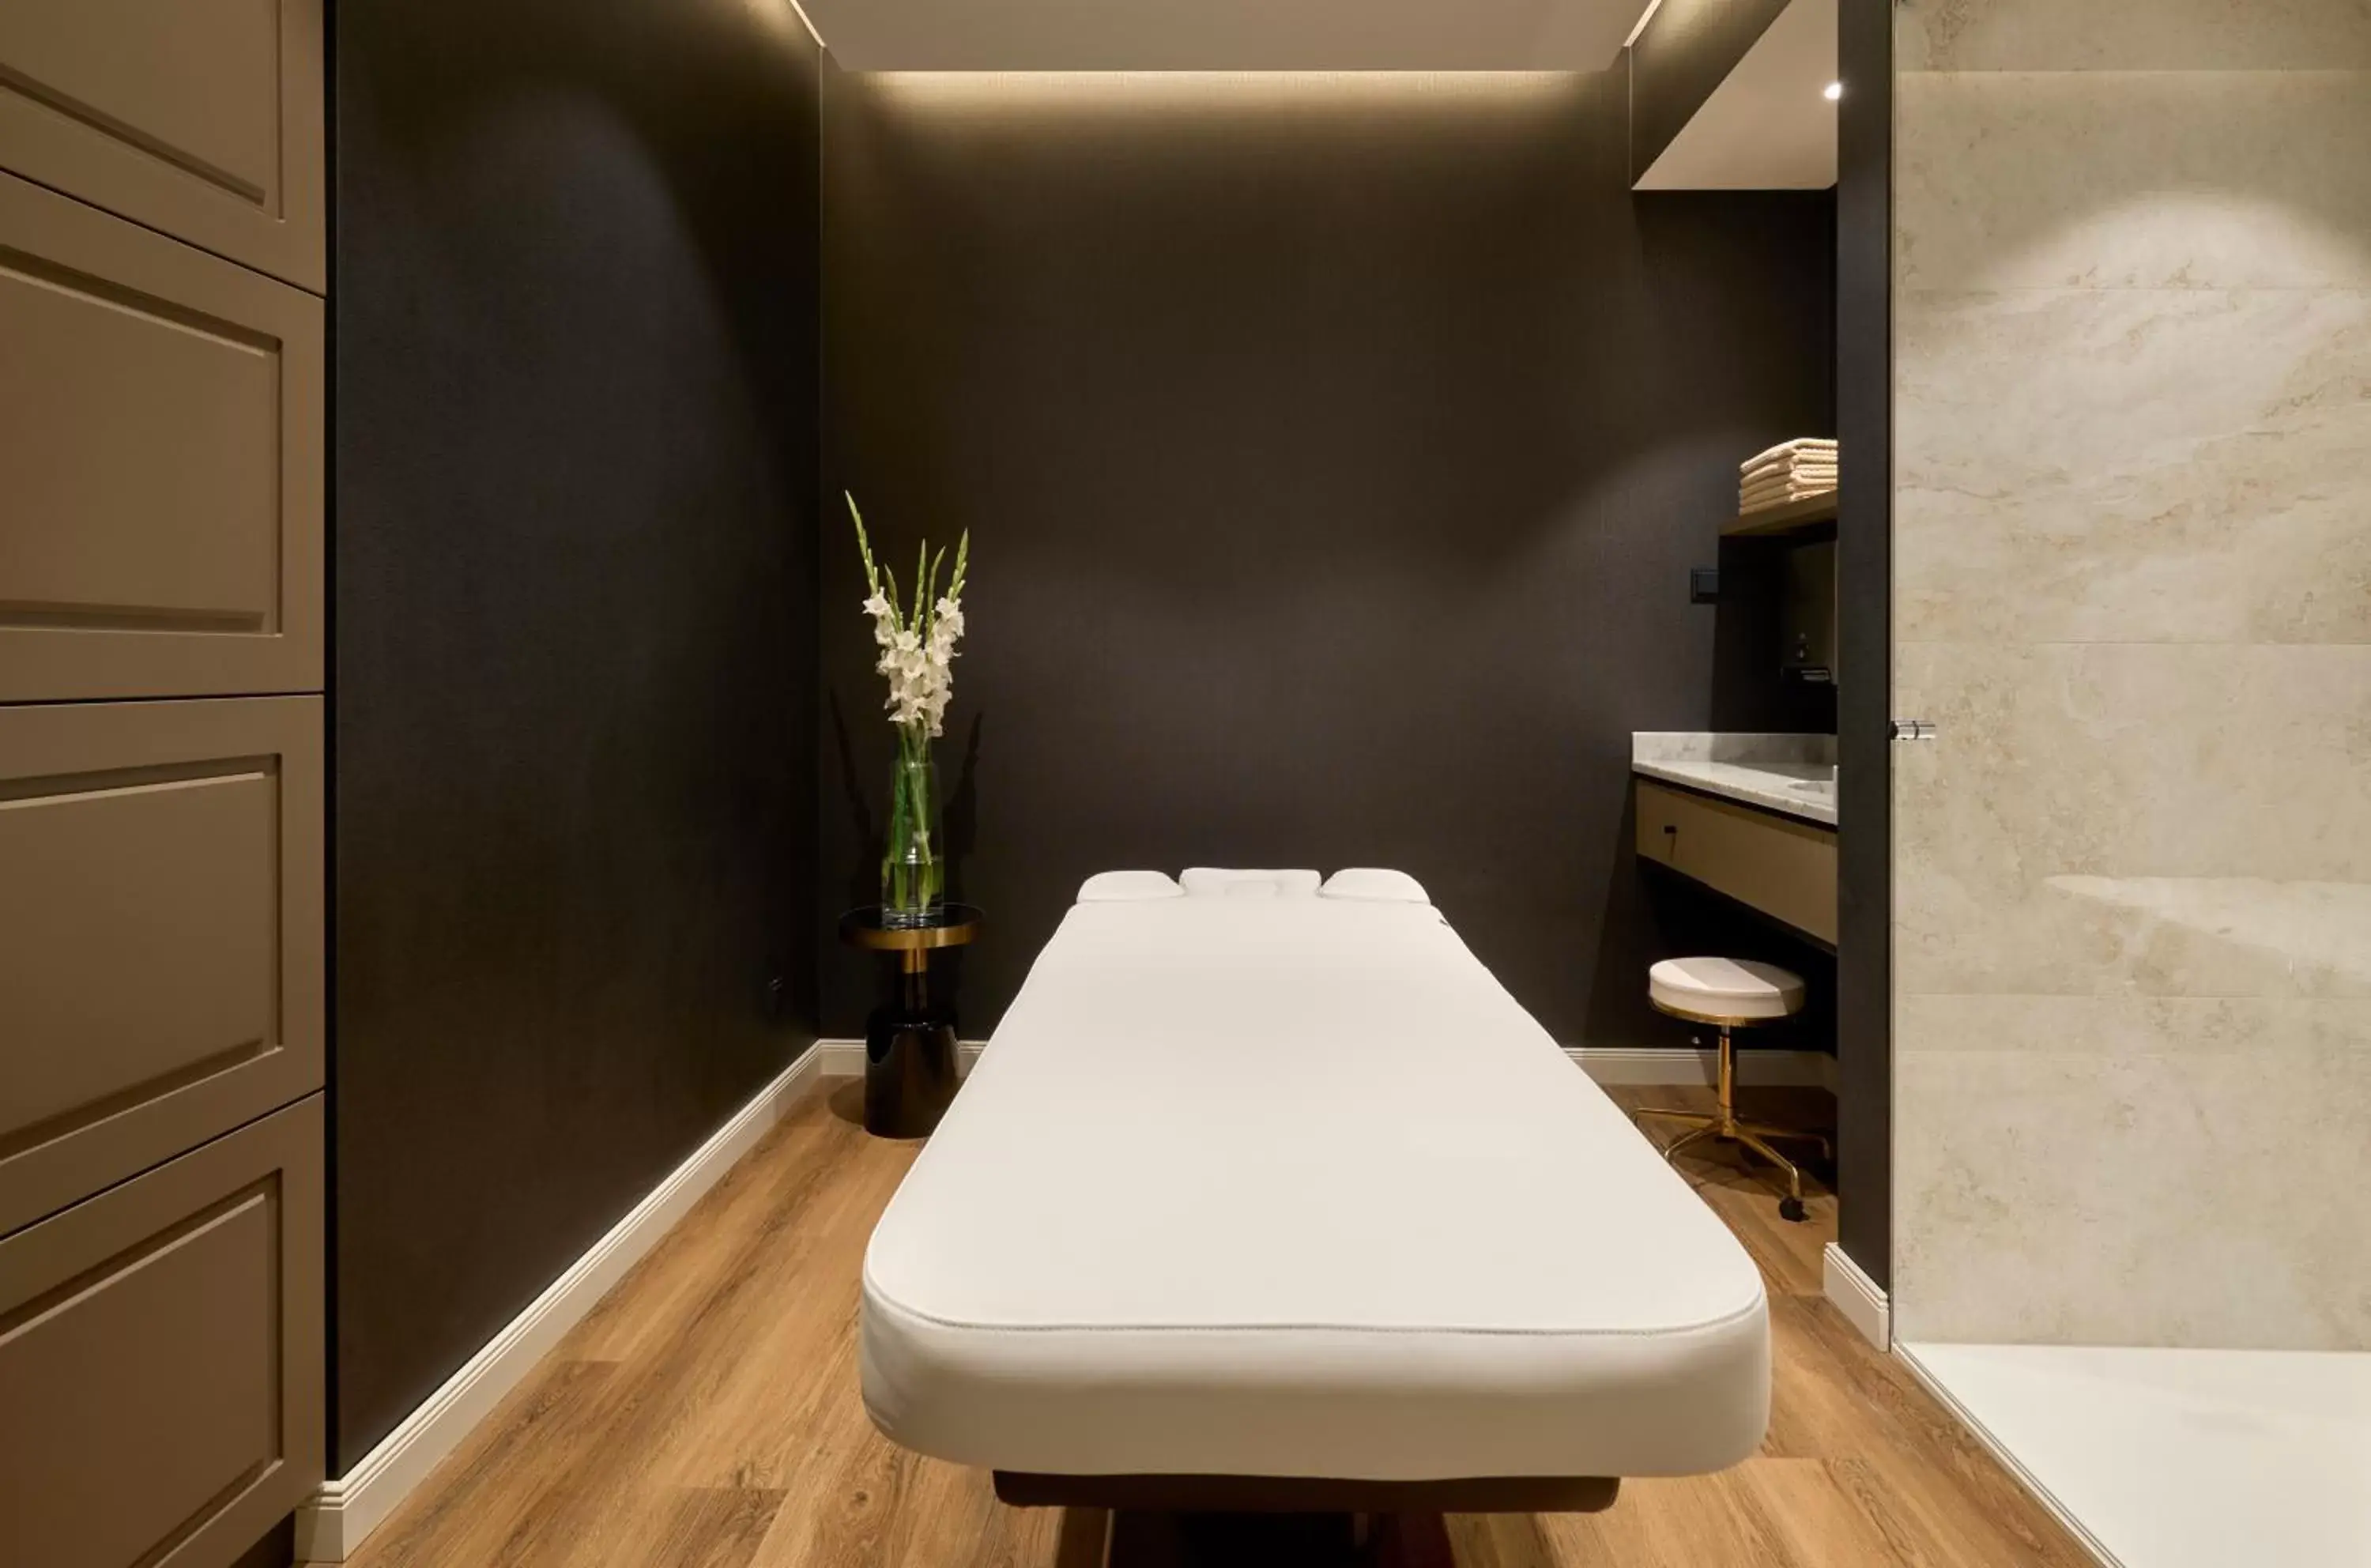 Spa and wellness centre/facilities, Bathroom in Hotel Saski Krakow Curio Collection by Hilton